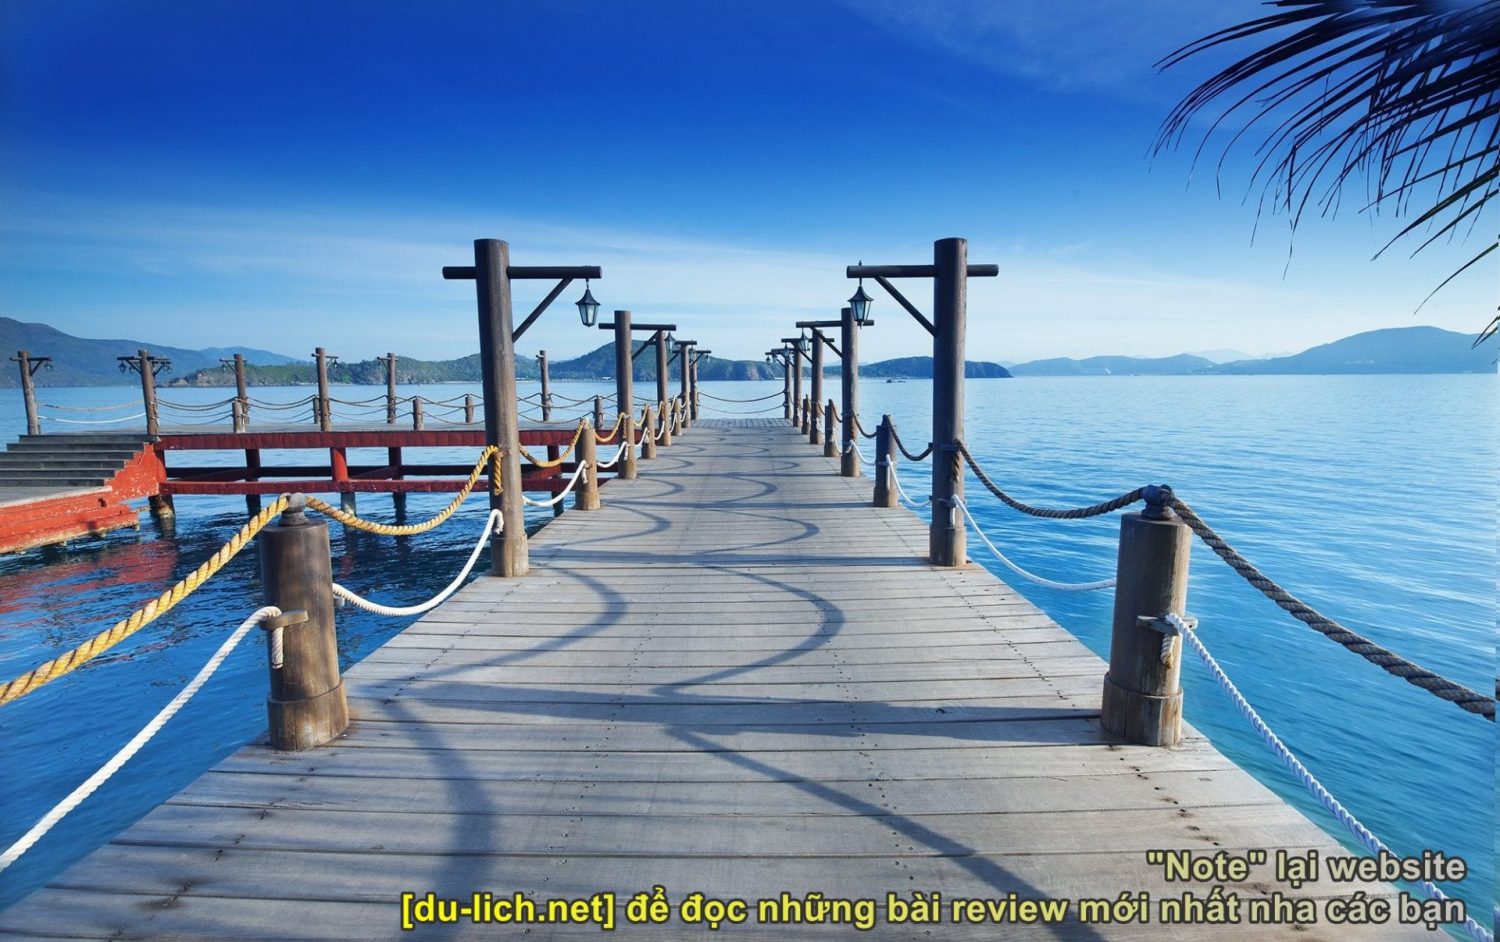 Hình ảnh cầu cảng đảo Hòn Tằm của Merperle Hòn Tằm Resort